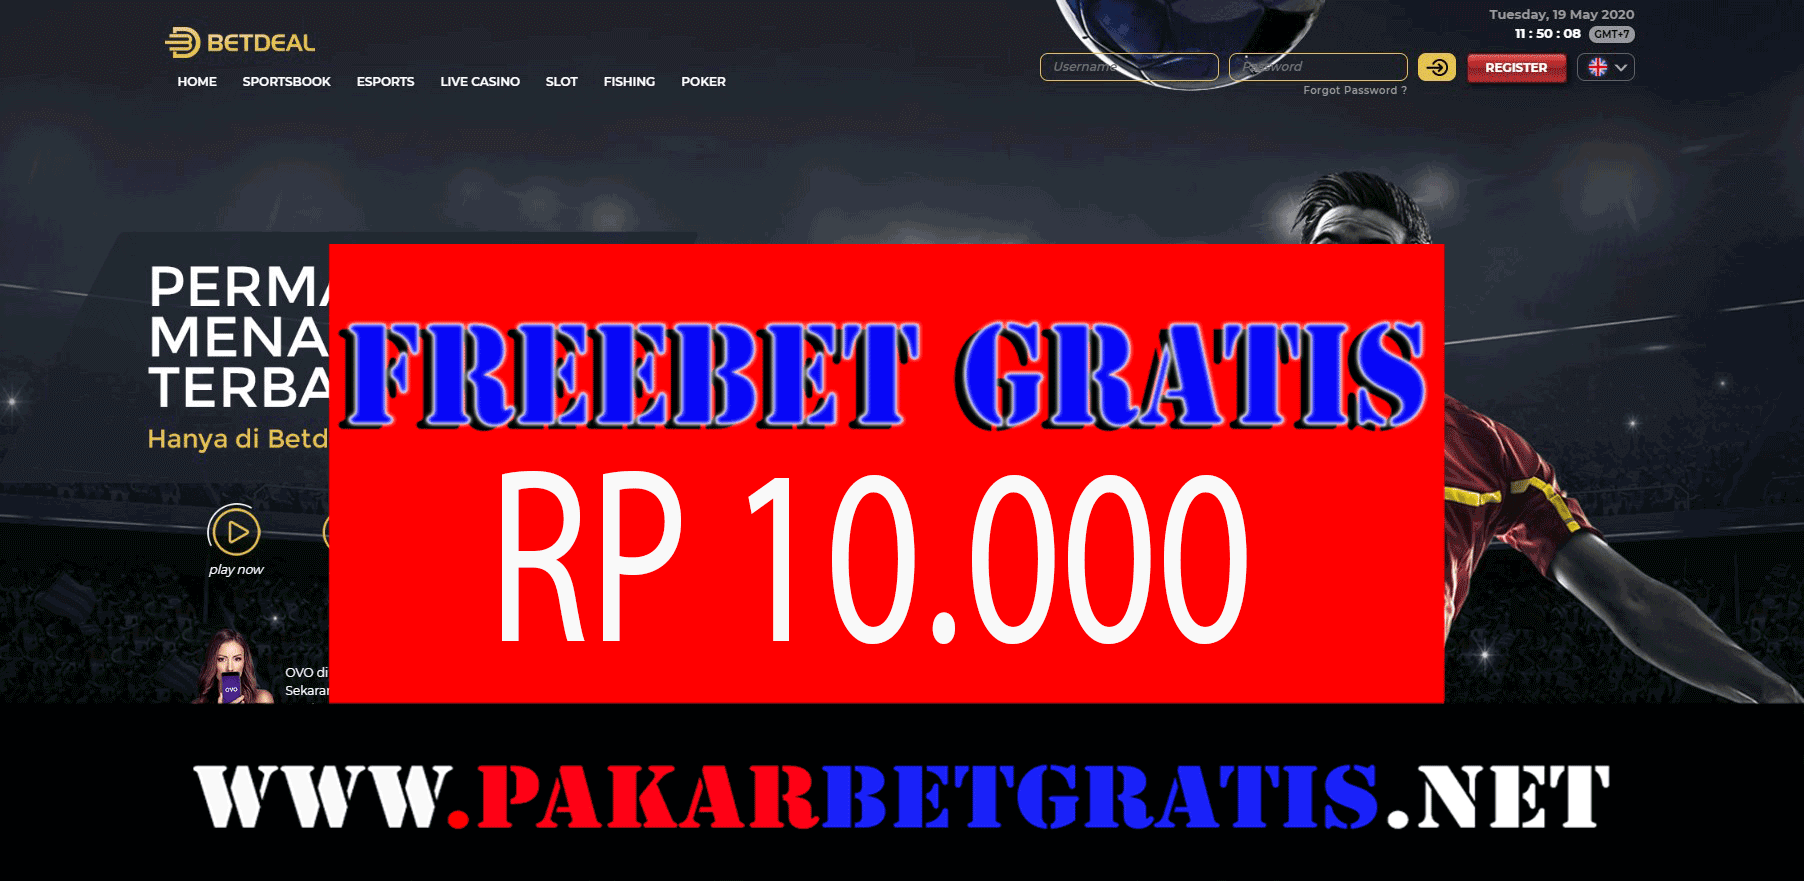 Freebet Gratis BETDEAL Rp 10.000 Tanpa Deposit